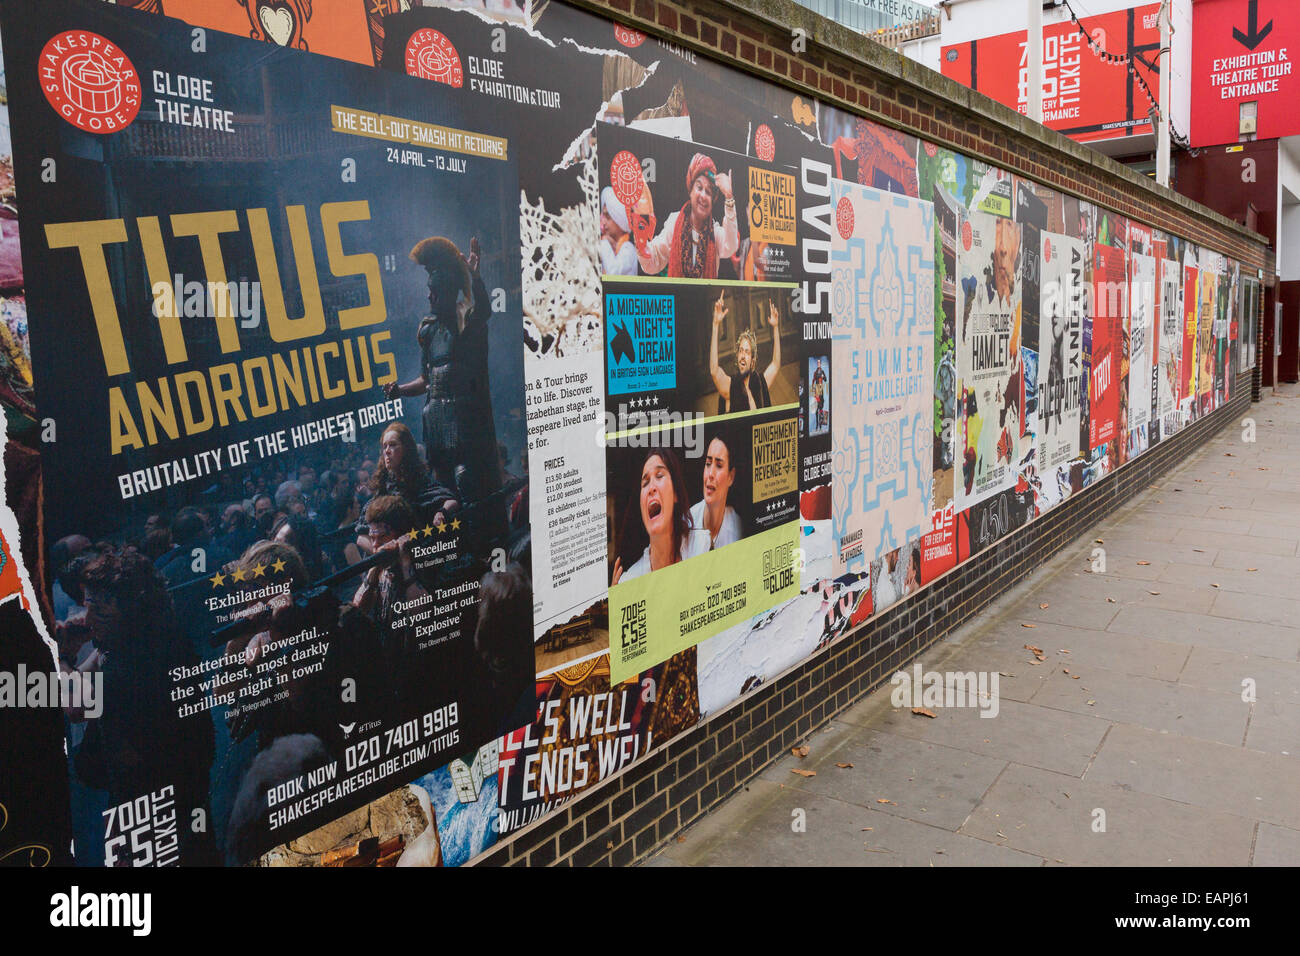 Carteles de publicidad producciones teatrales adornan una pared fuera del Globe Theatre, Londres, Inglaterra, Reino Unido. Foto de stock